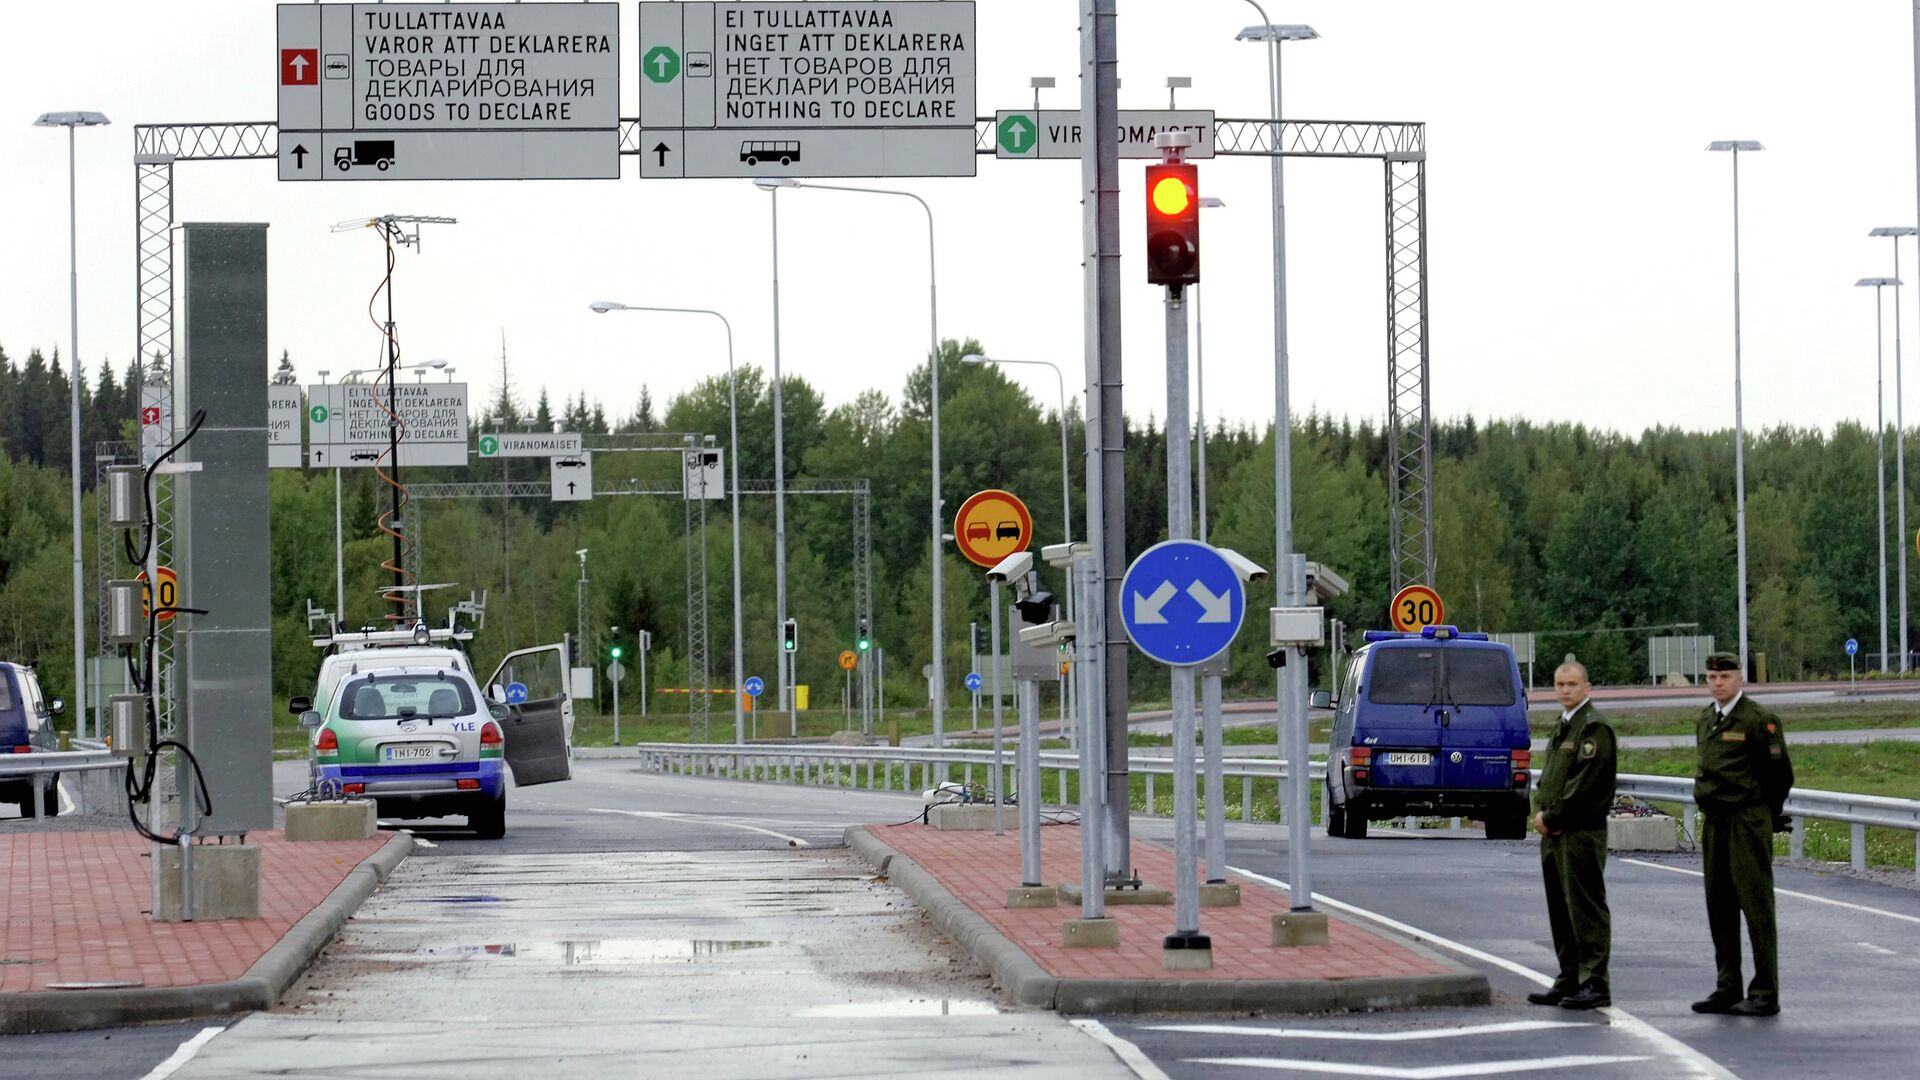 Хяккянен: Финляндия рассмотрит запрет сделок с недвижимостью для граждан РФ